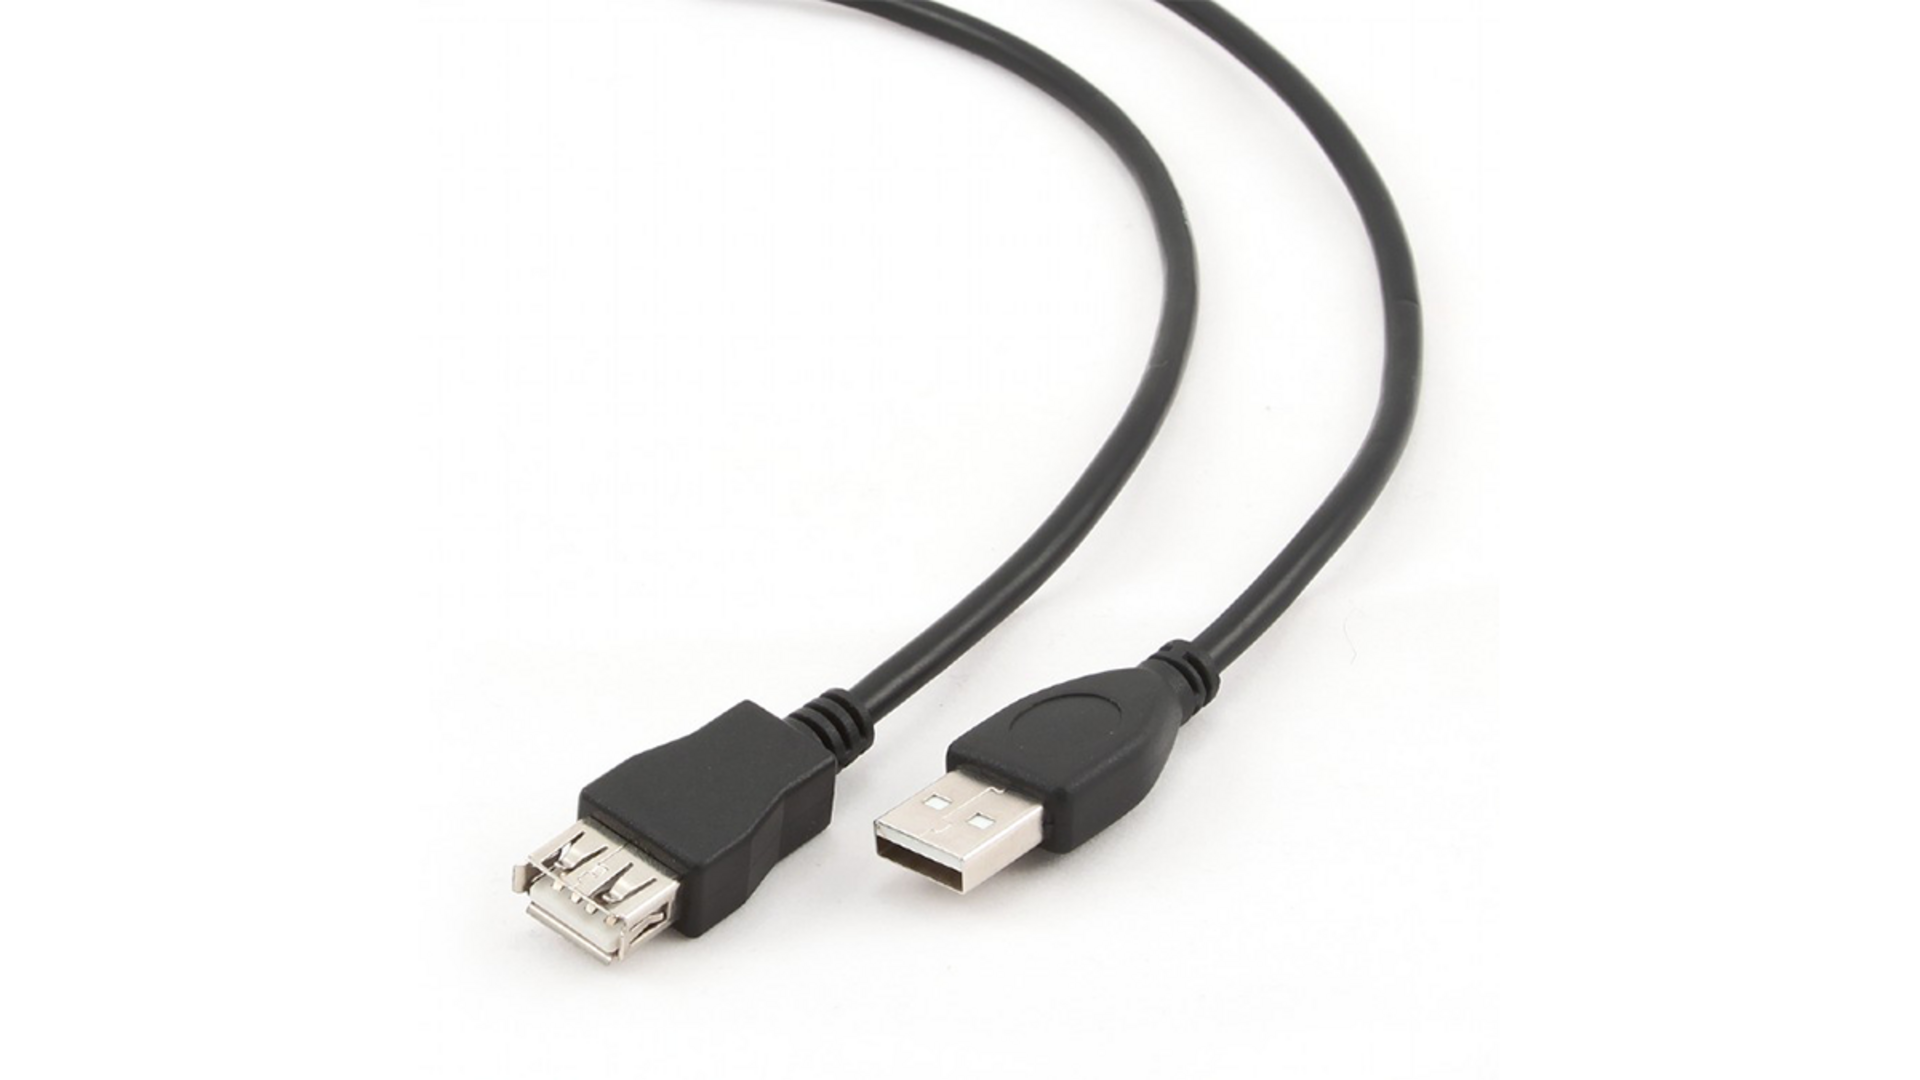 KINGDA USB Male to USB Female დამაგრძელებელი 1.8მ